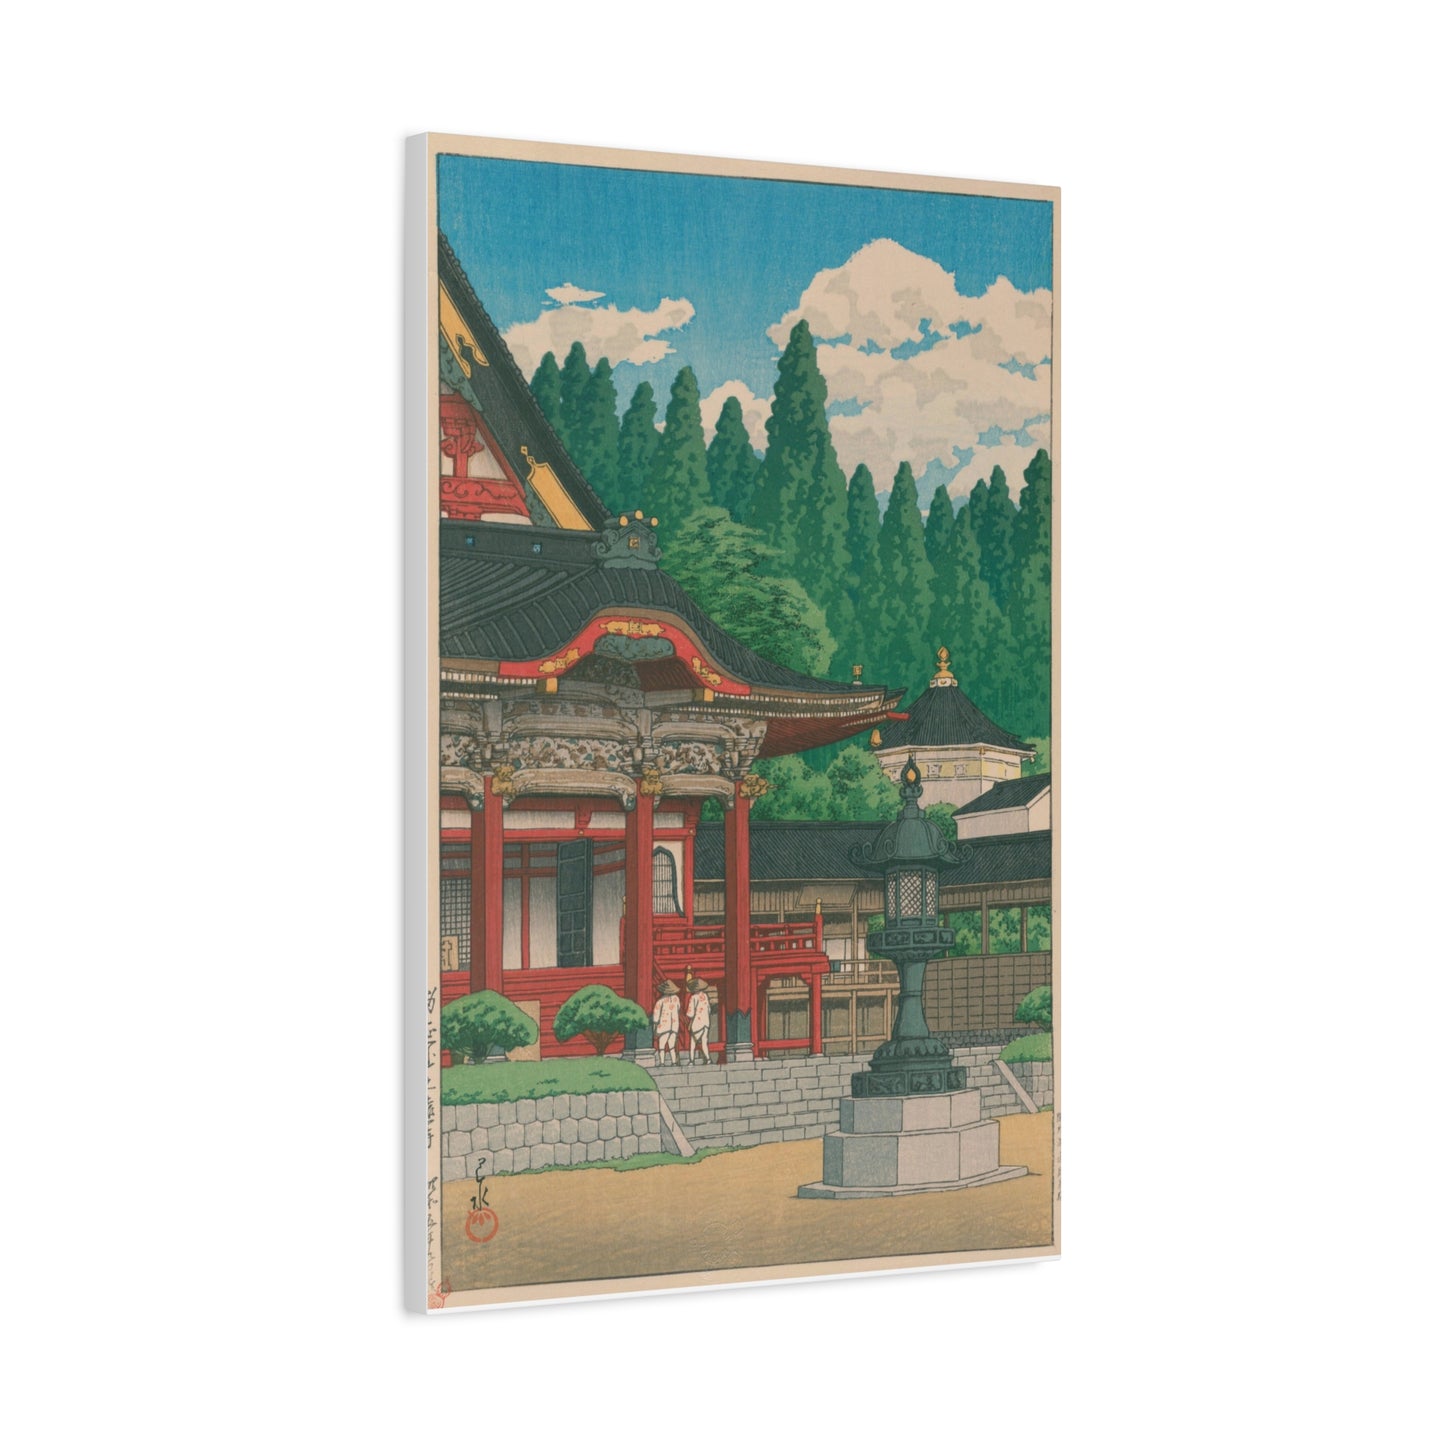 Fudo Temple, Meguro - Kawase Hasui